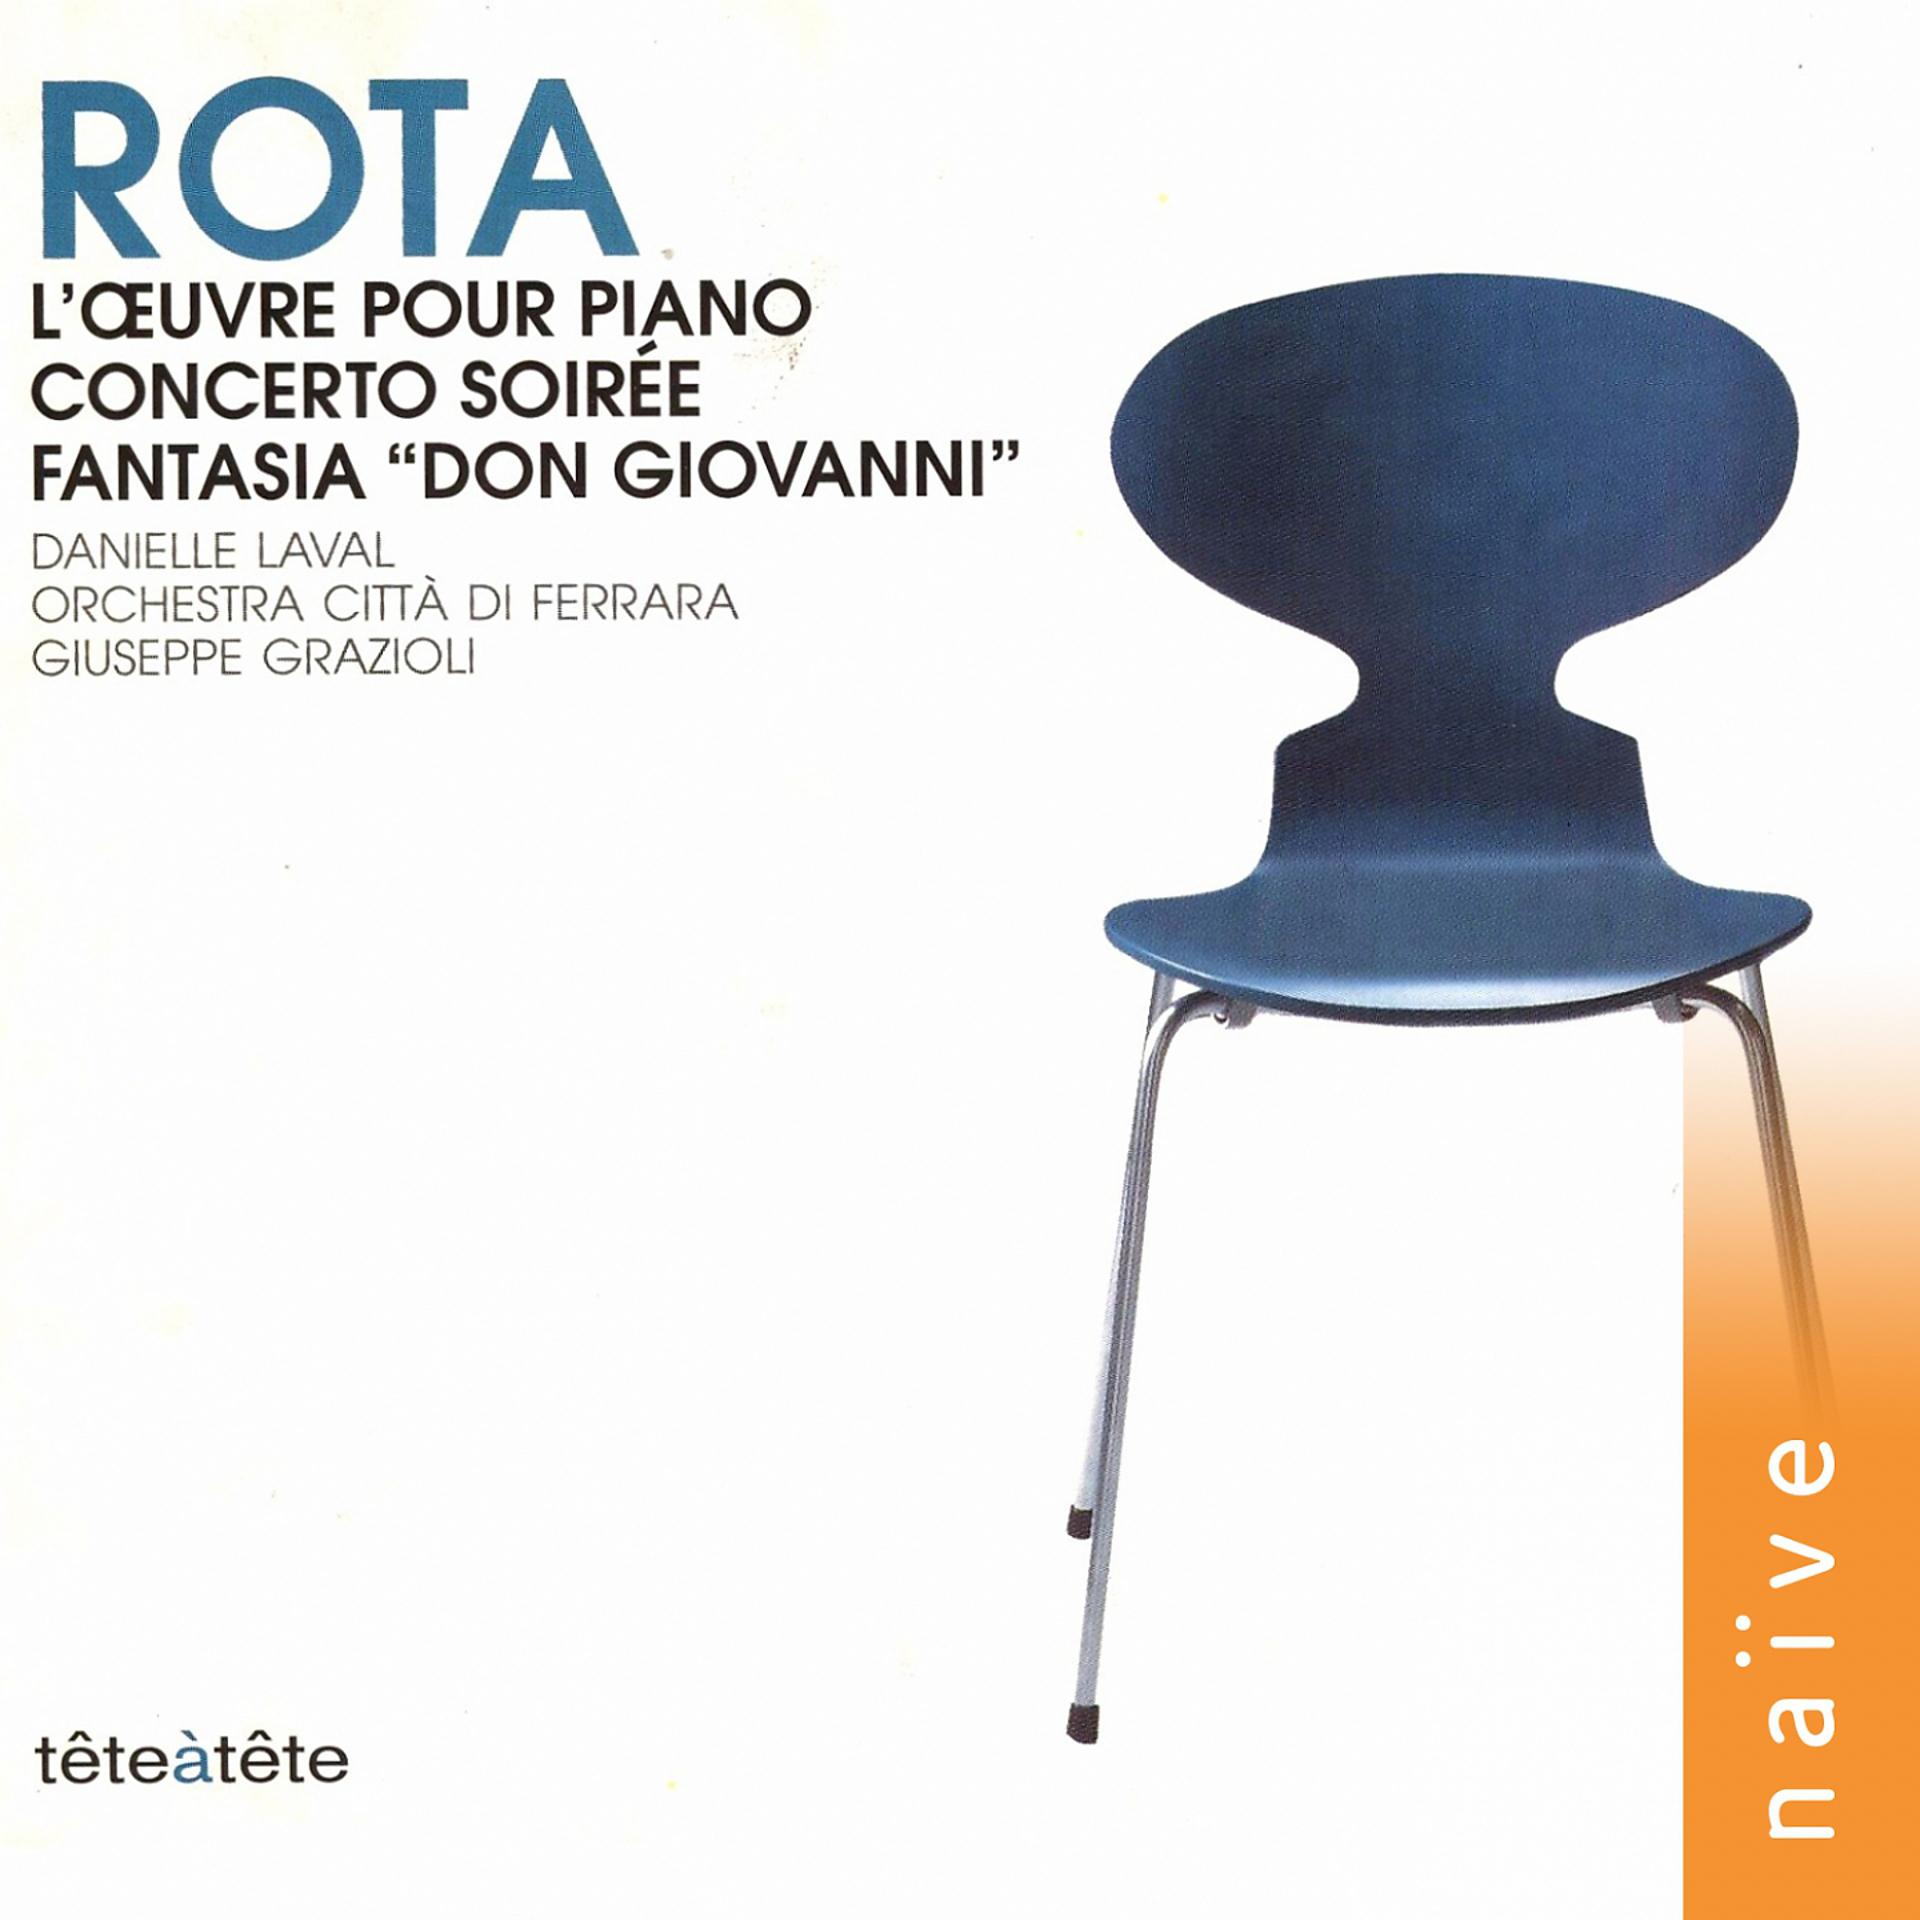 Orchestra Città di Ferrara - фото